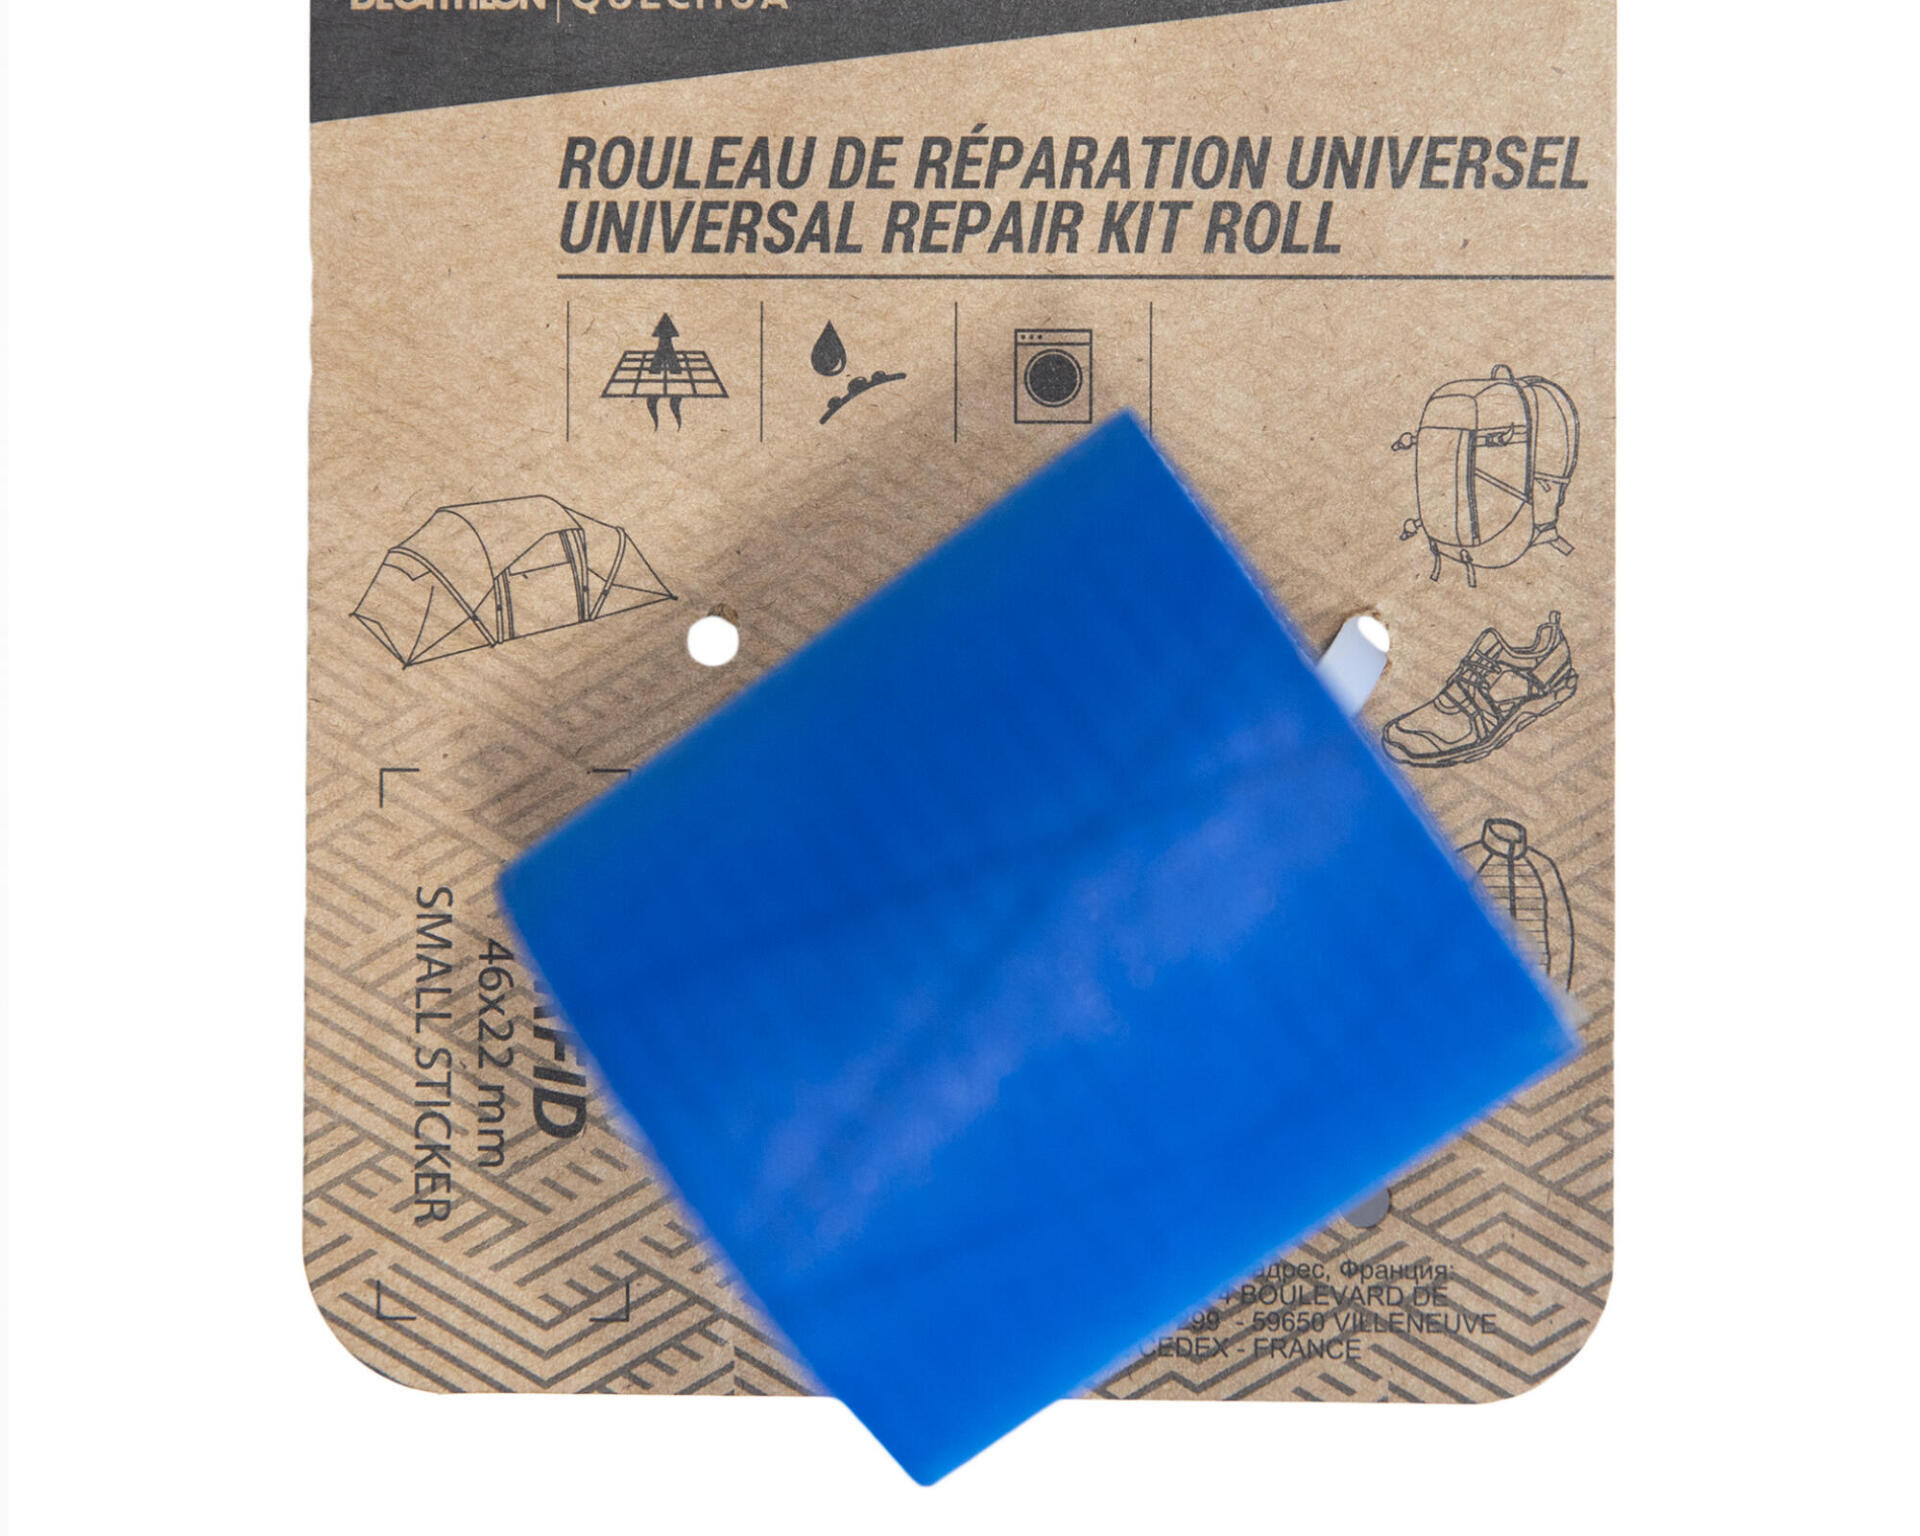 Universal repair kit roll